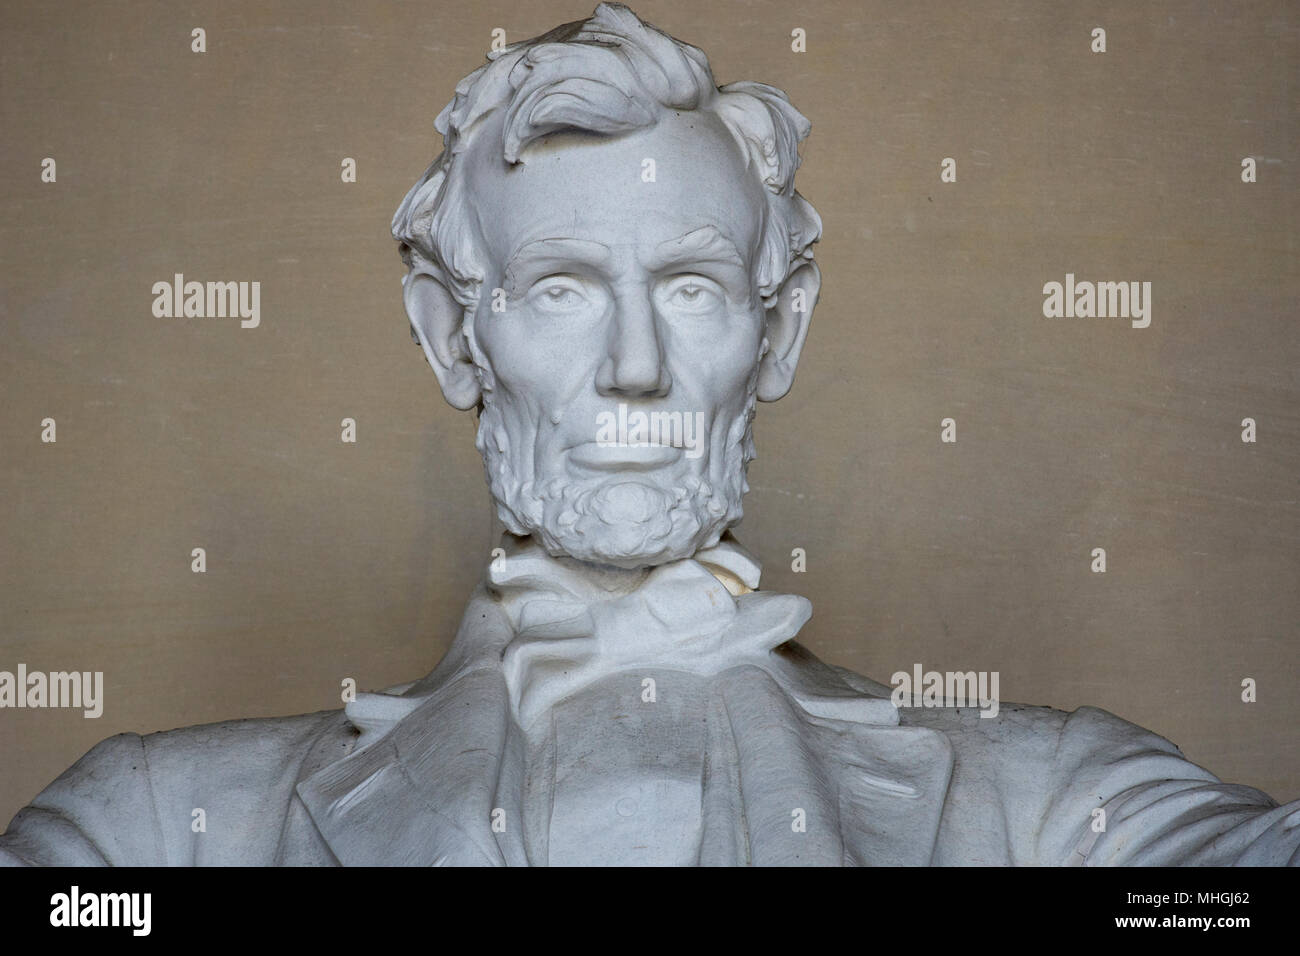 Testa e spalle vista del iconnic scultura di Abraham Lincoln dallo scultore Daniel Chester French, presso il Lincoln Memorial a Washington, DC. Foto Stock